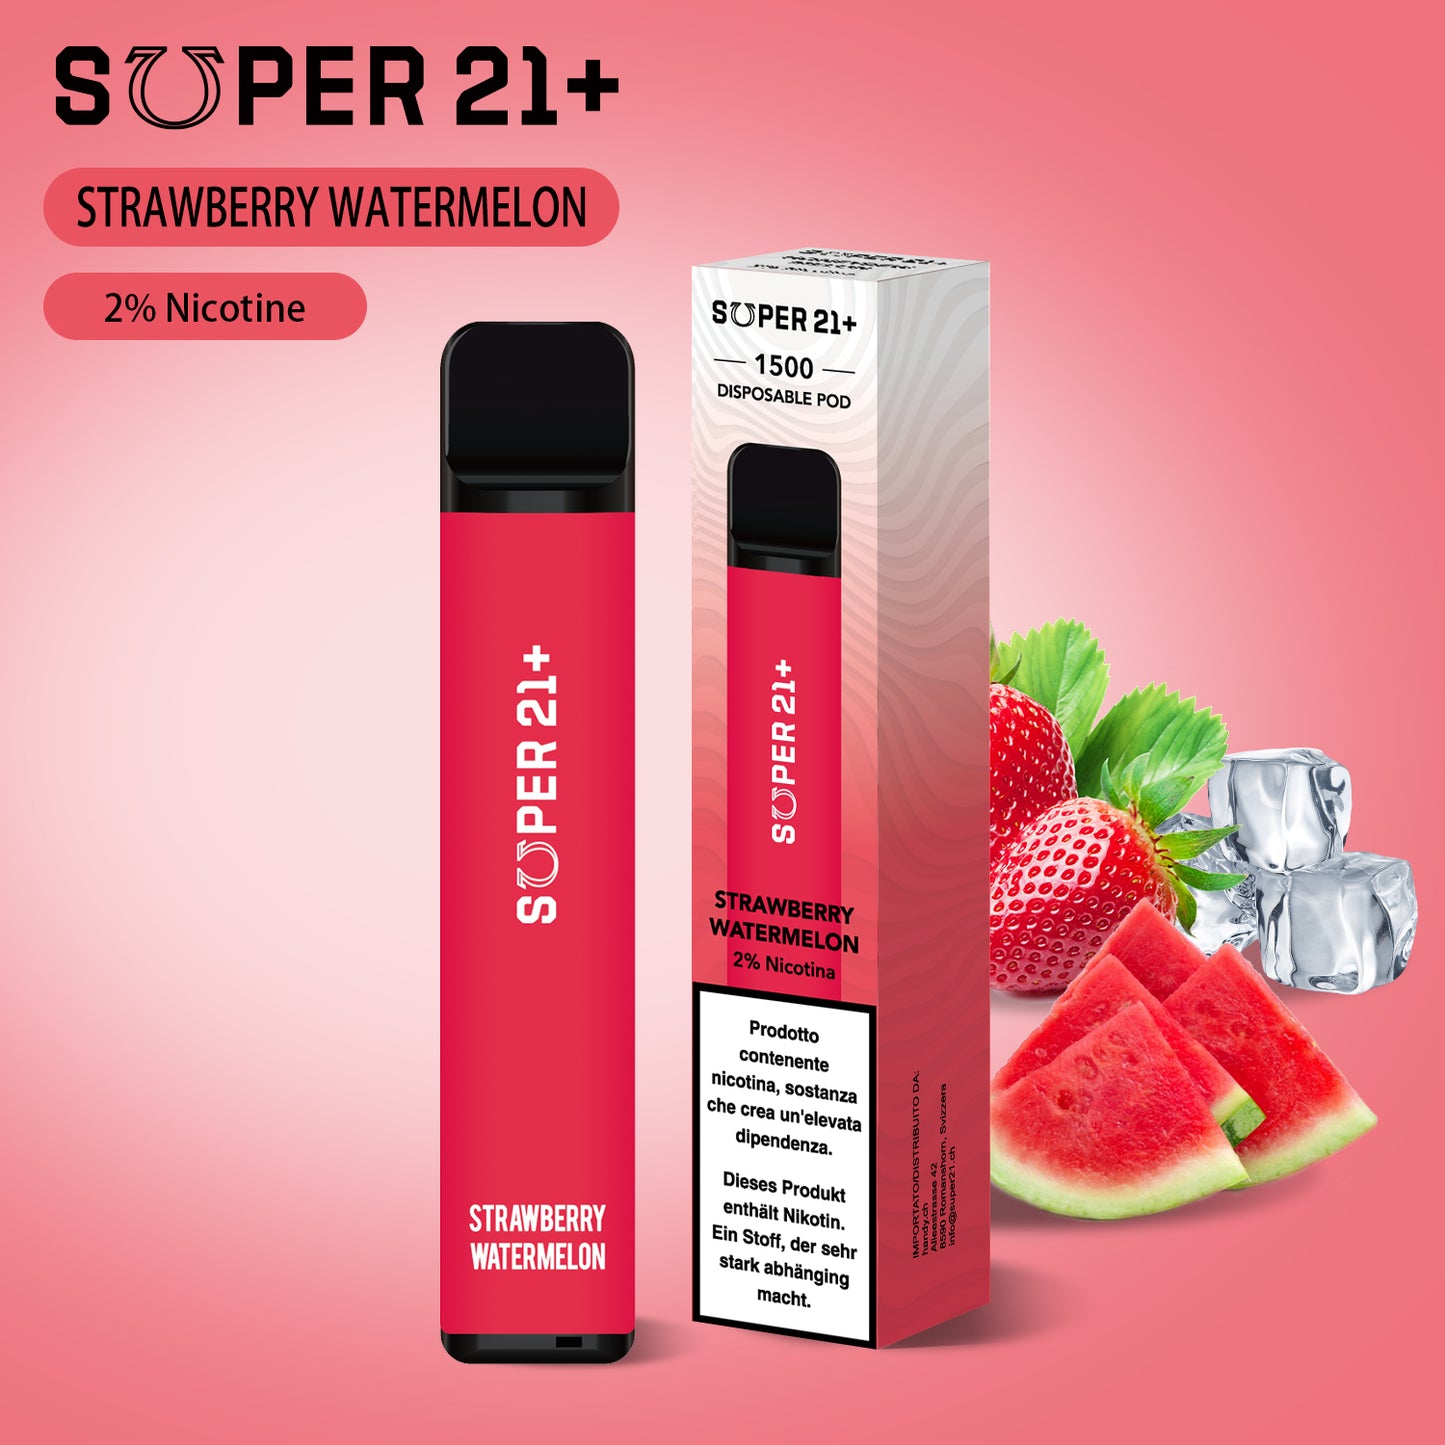 Super 21+ 1500 Strawberry Watermelon (2%)